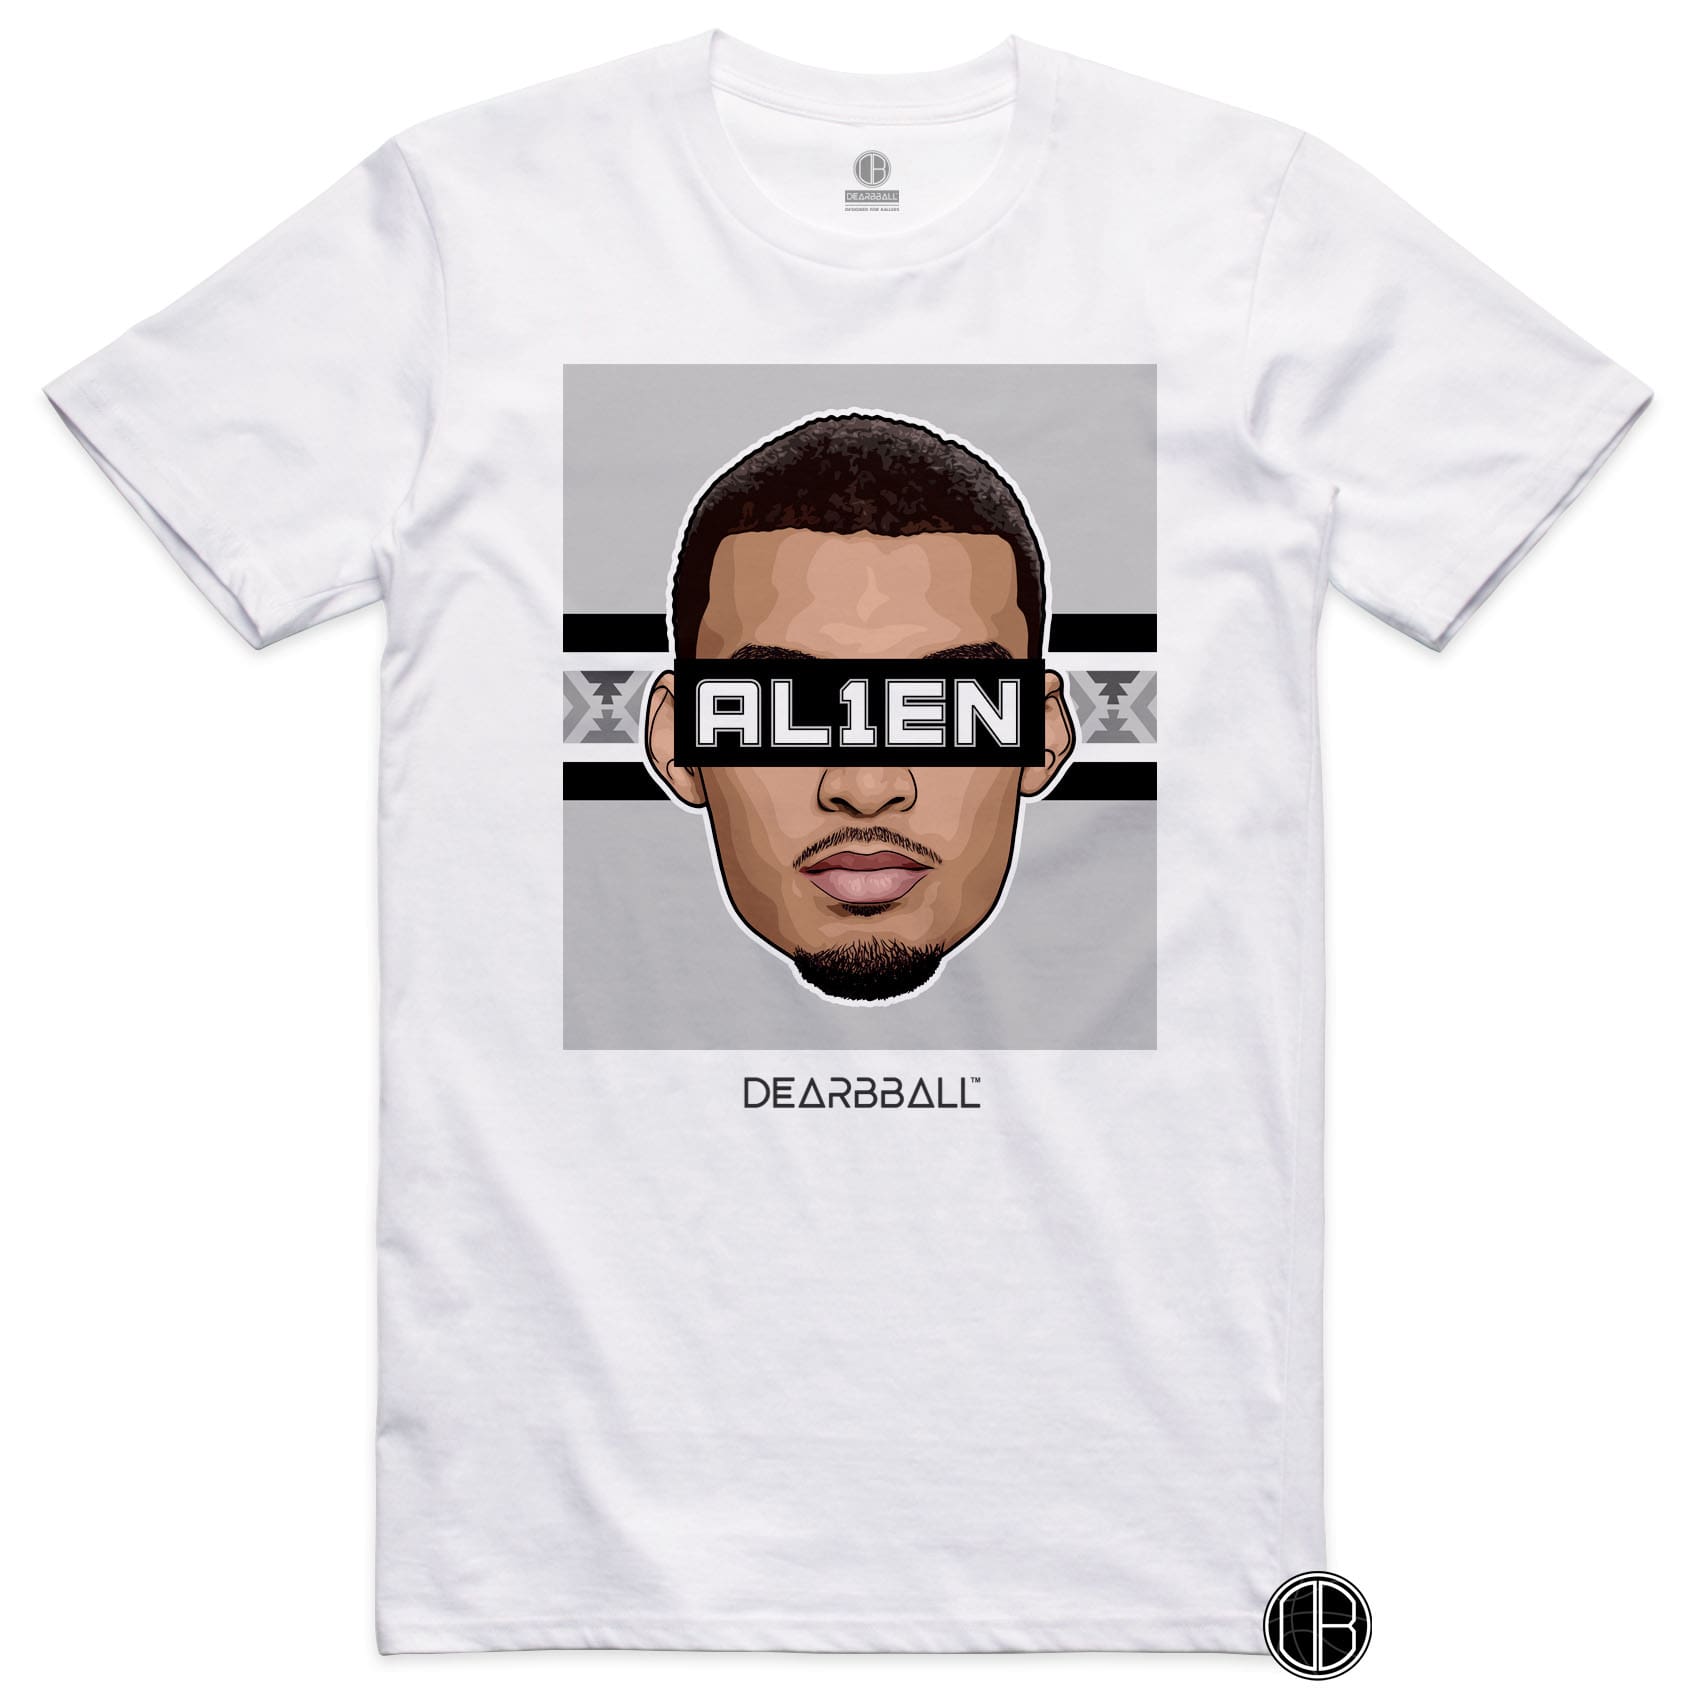 DearBBall T-Shirt - AL1EN San Antonio Edition